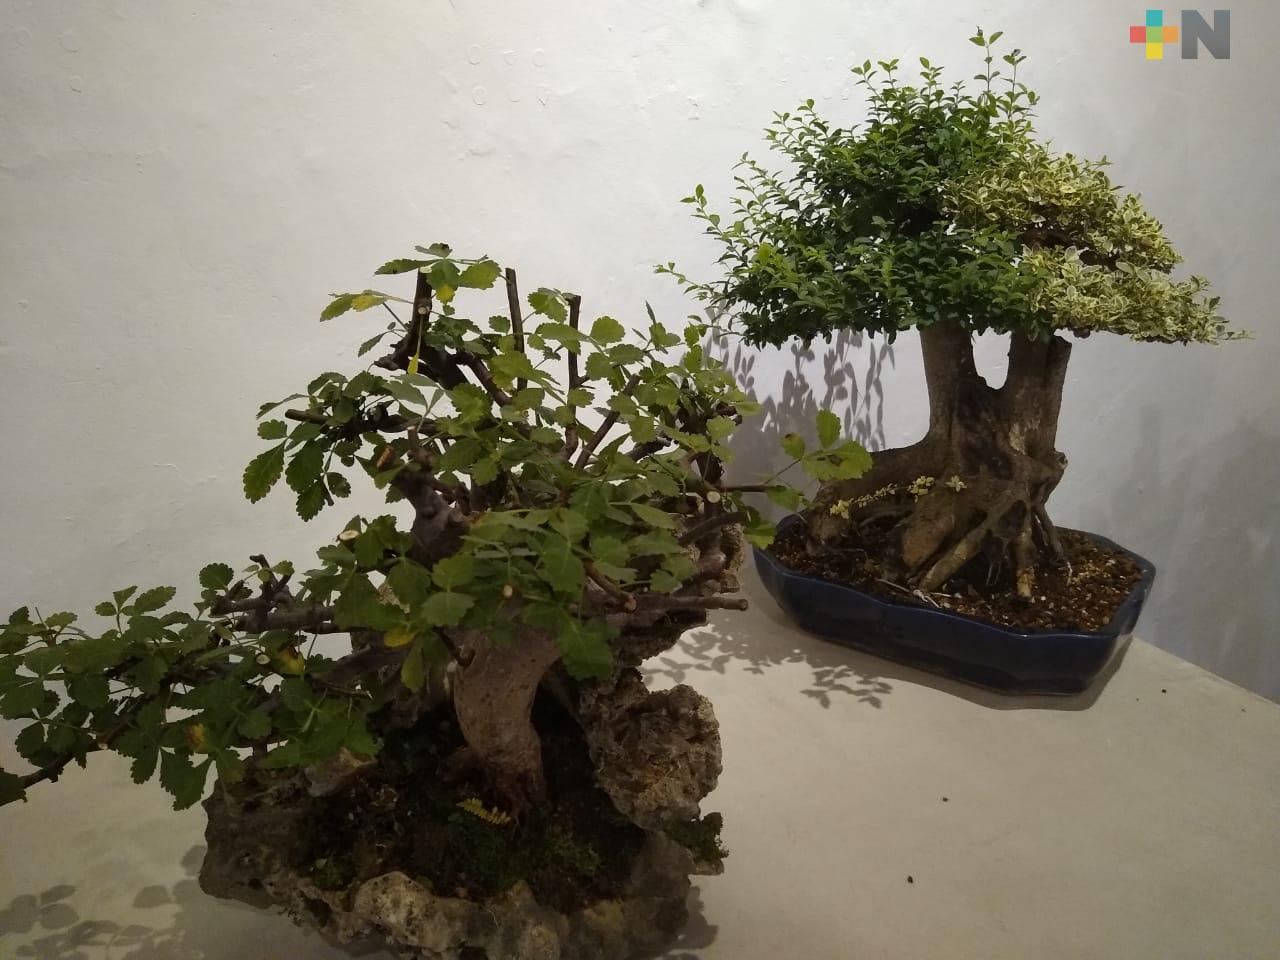 Cultivo de árboles bonsái, terapia para cultivar la paciencia